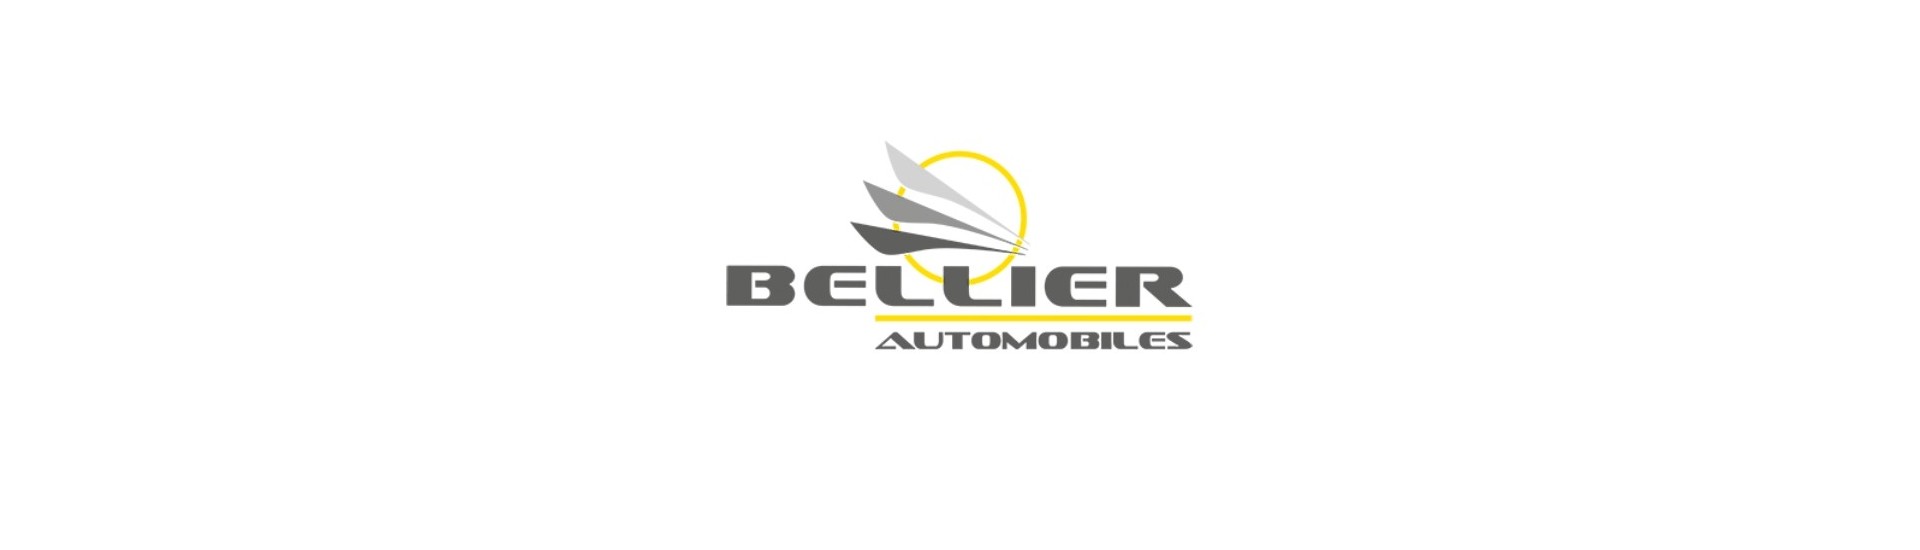 Motorvariator zum besten Preis für Auto ohne Lizenz Bellier